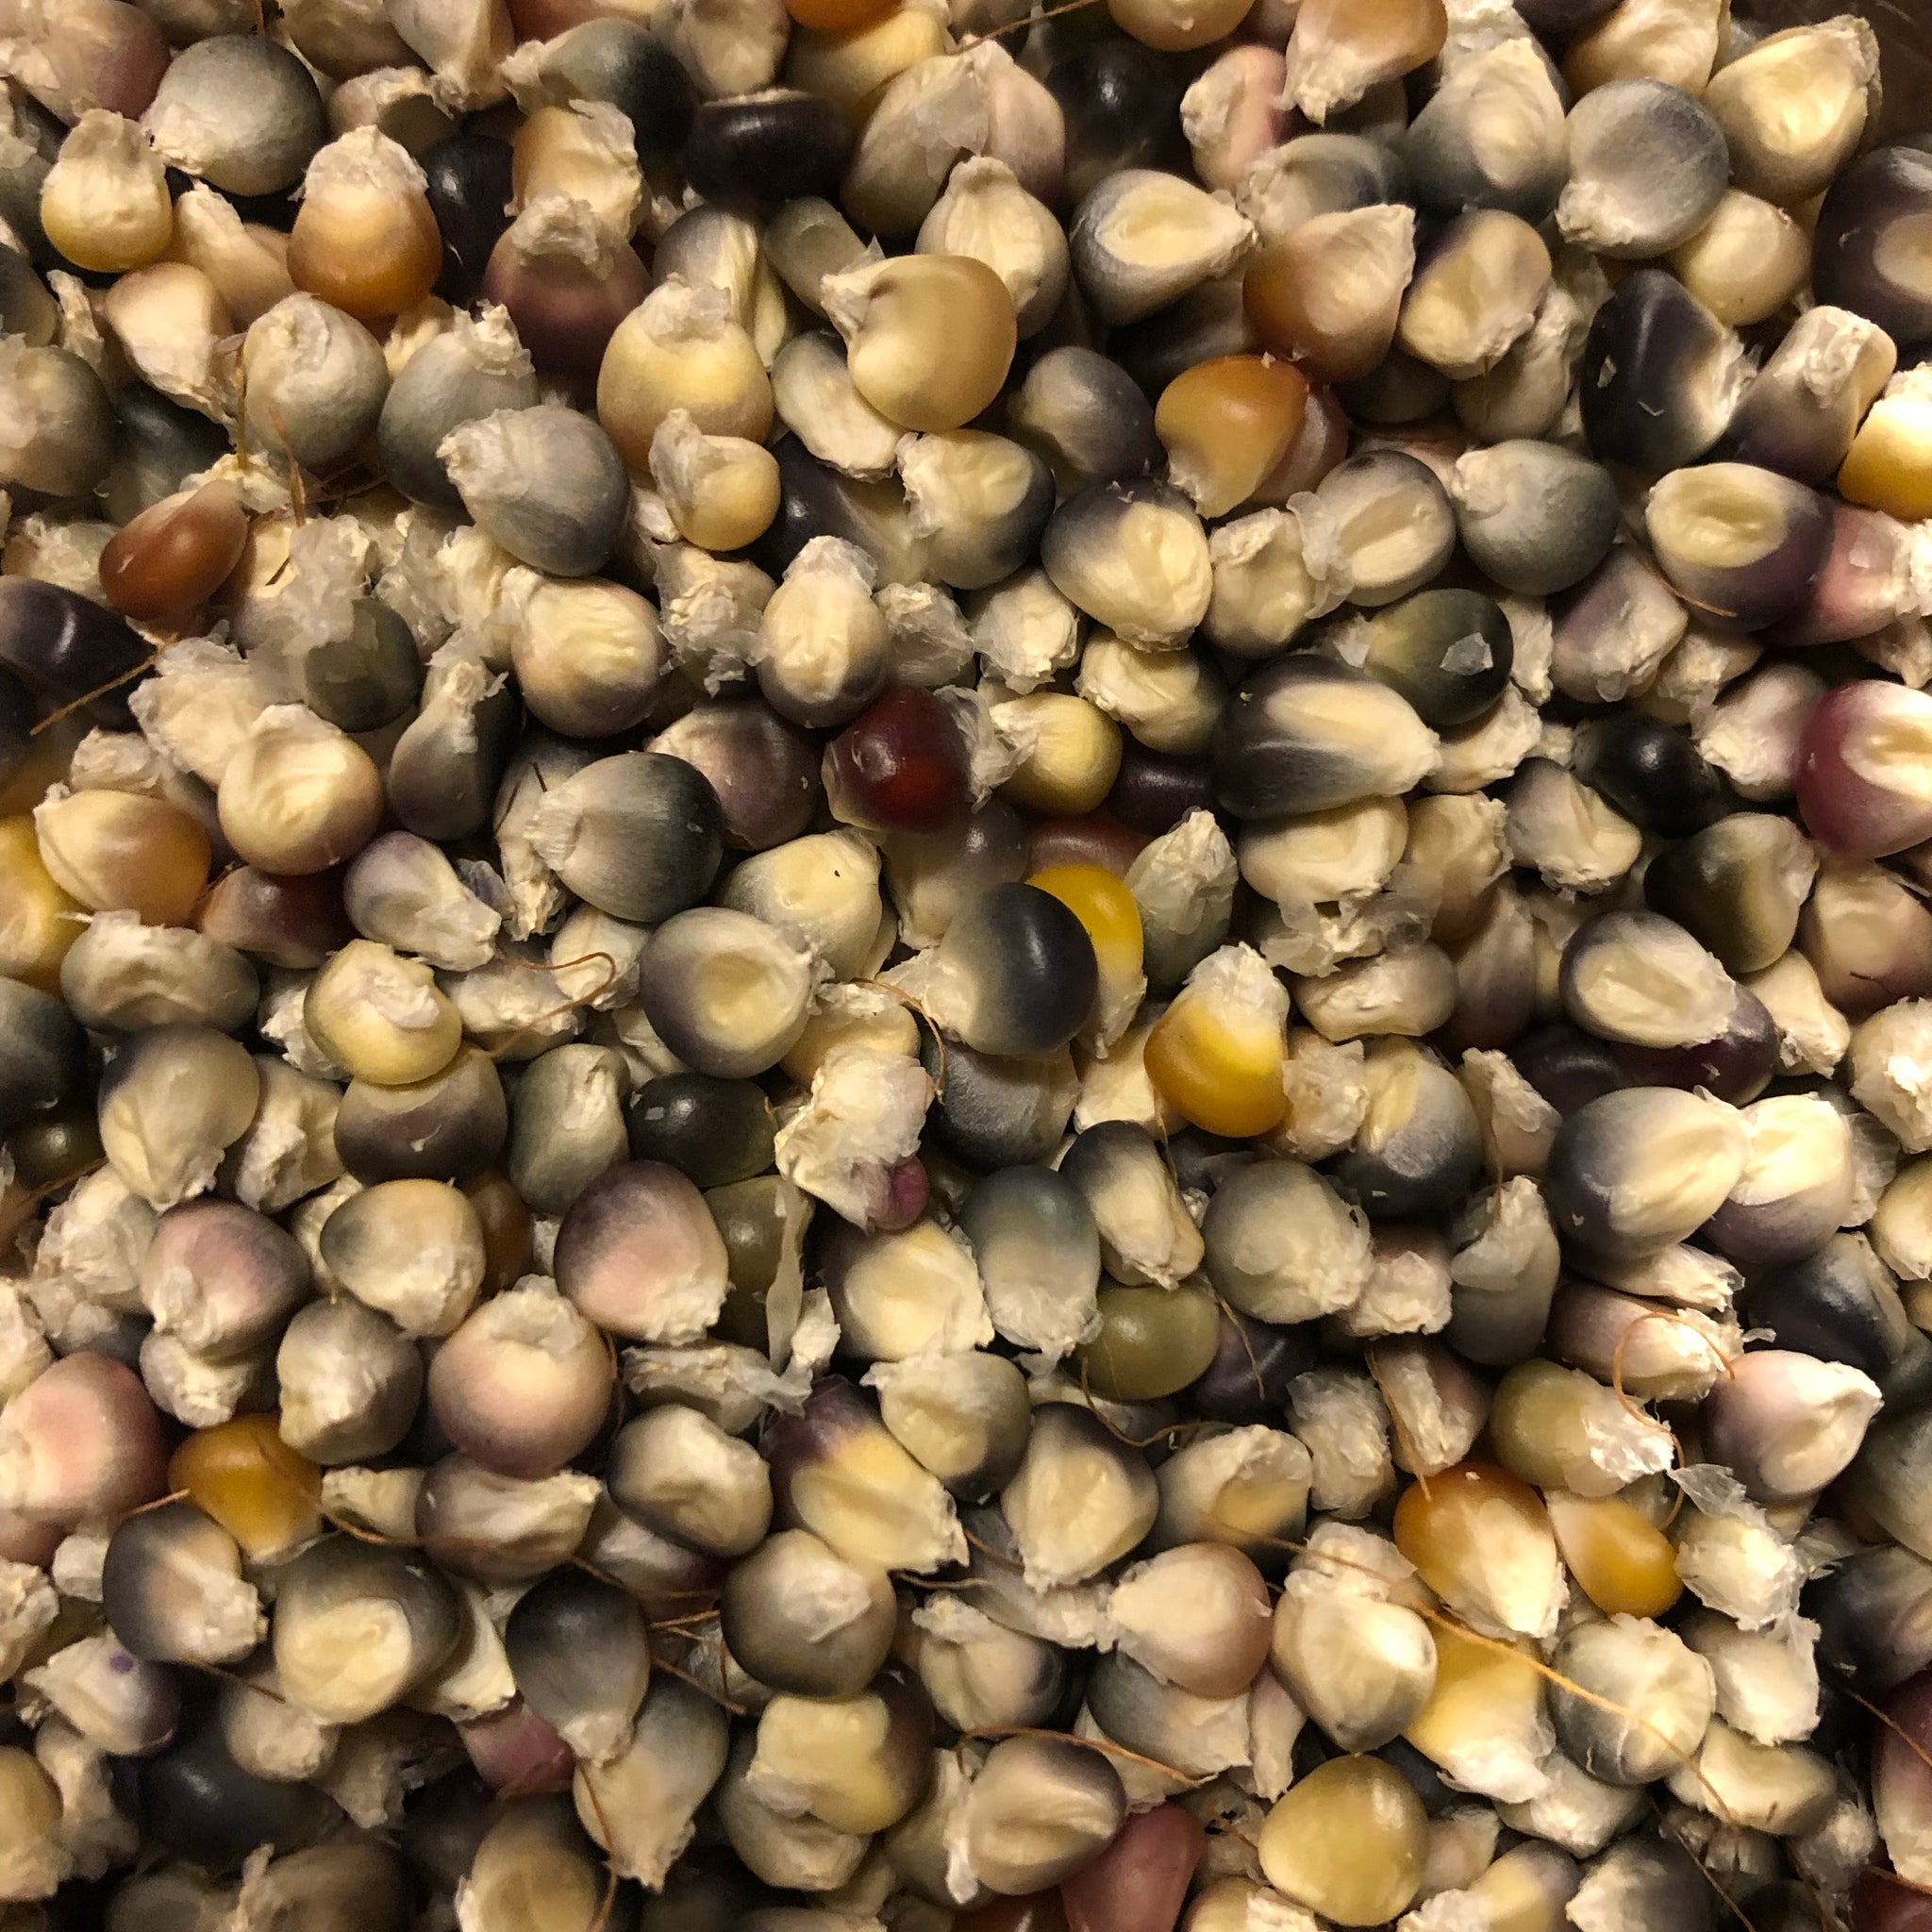 Glass Gem Flint Corn Seeds